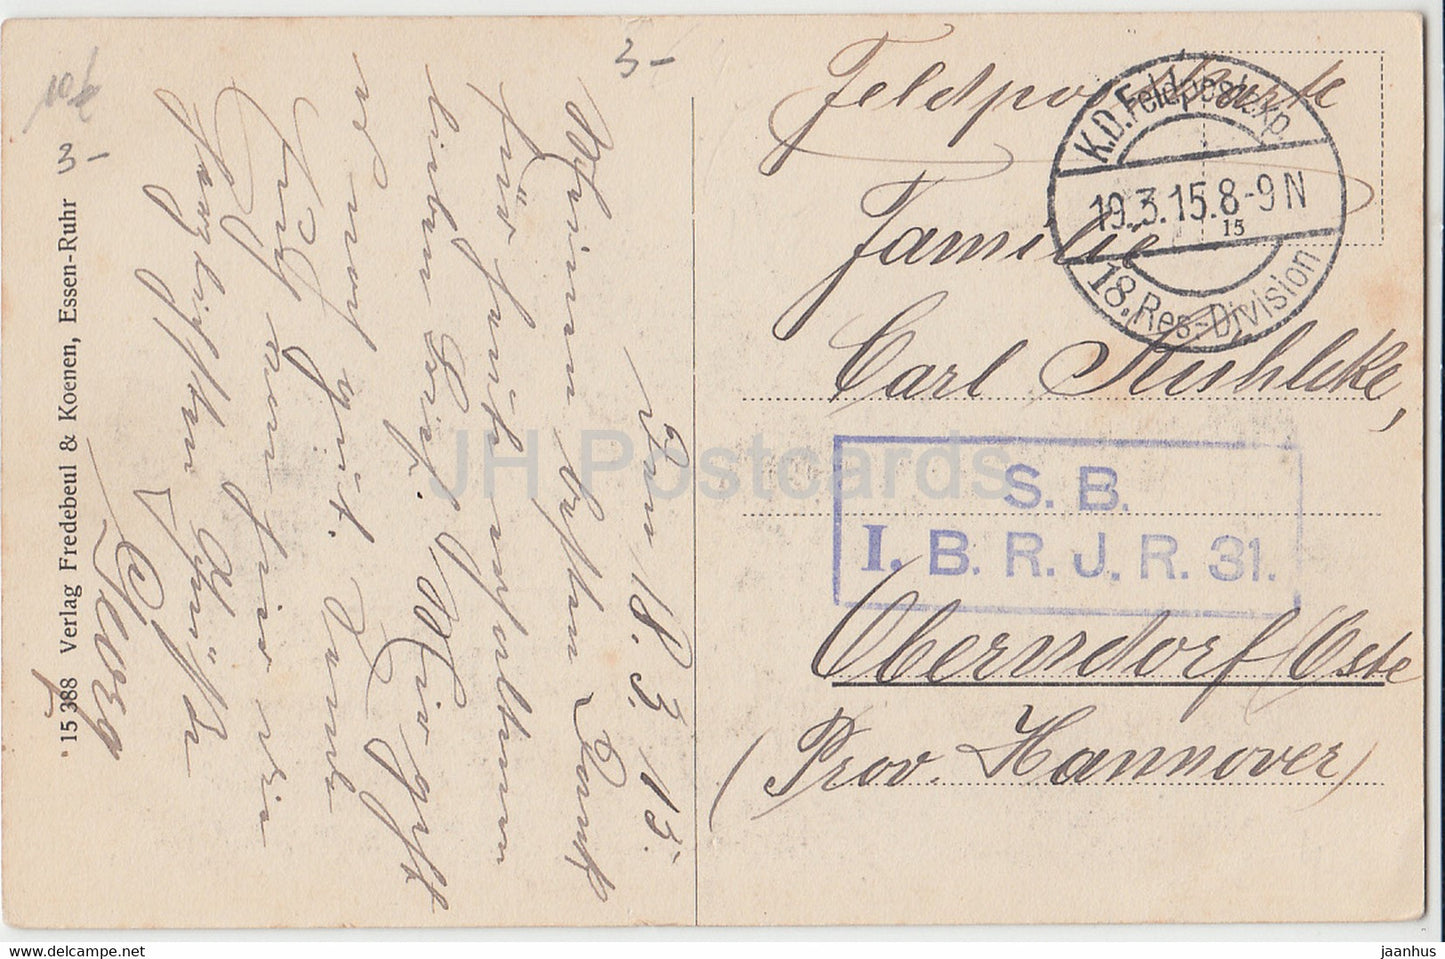 Noyon - Cathédrale - Abside - 18 Res Division - Feldpost - carte postale ancienne - 1915 - France - utilisé